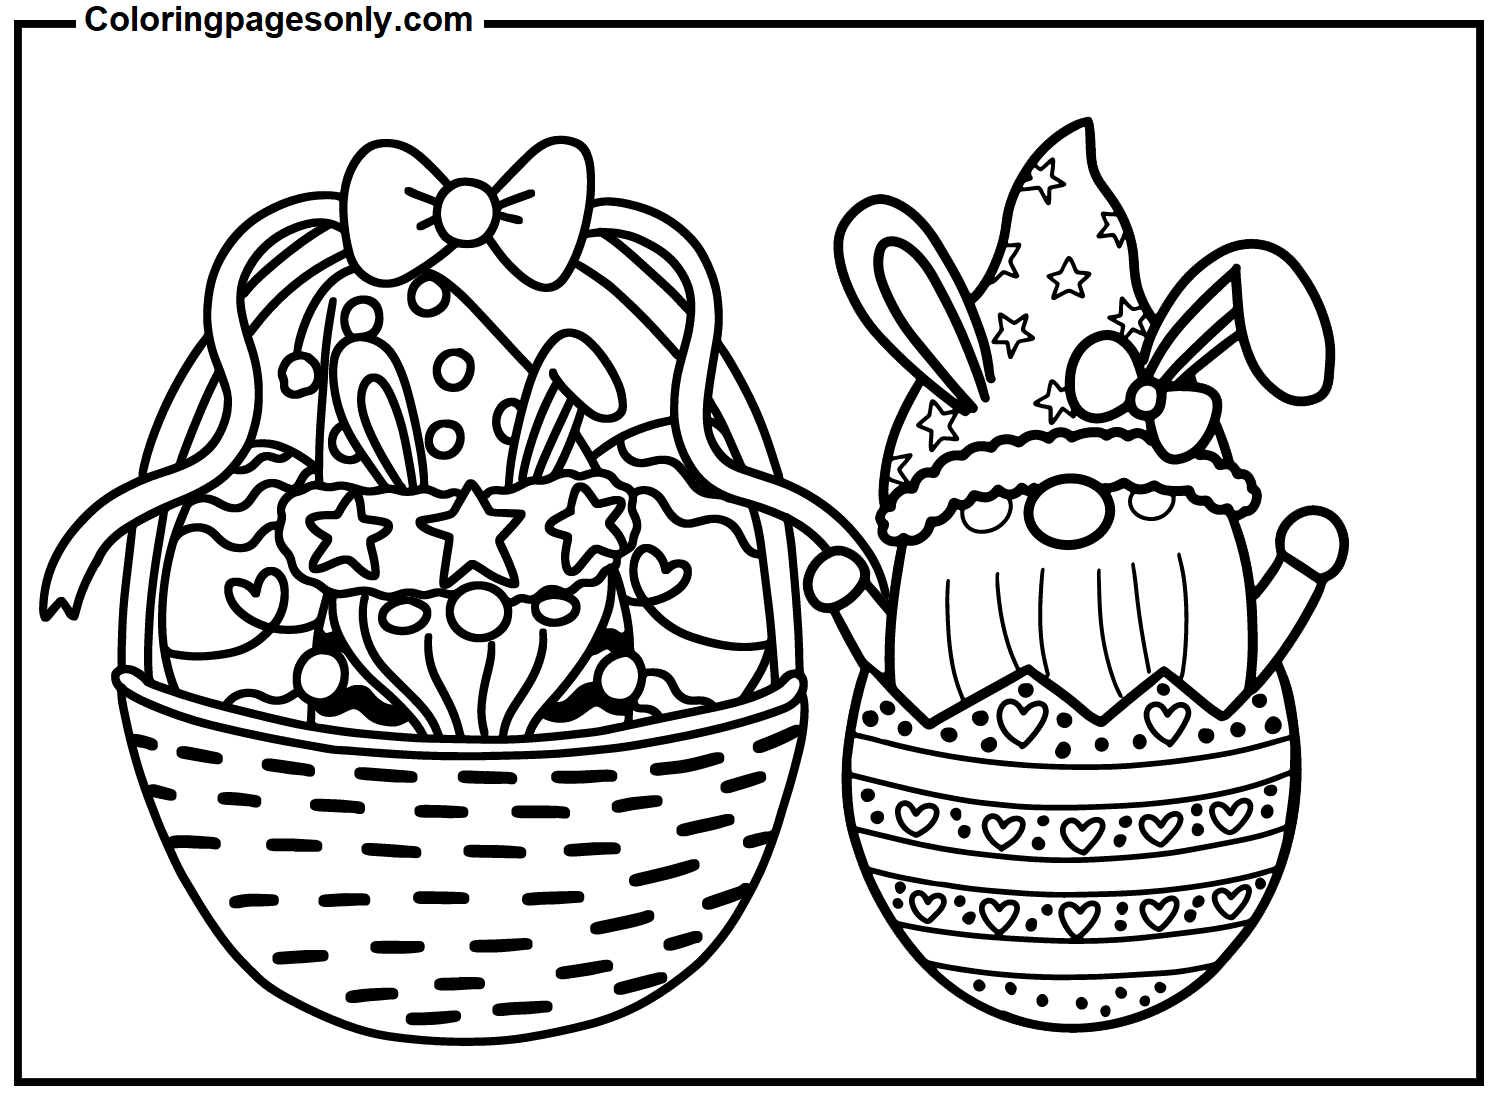 复活节侏儒与复活节侏儒的鸡蛋篮